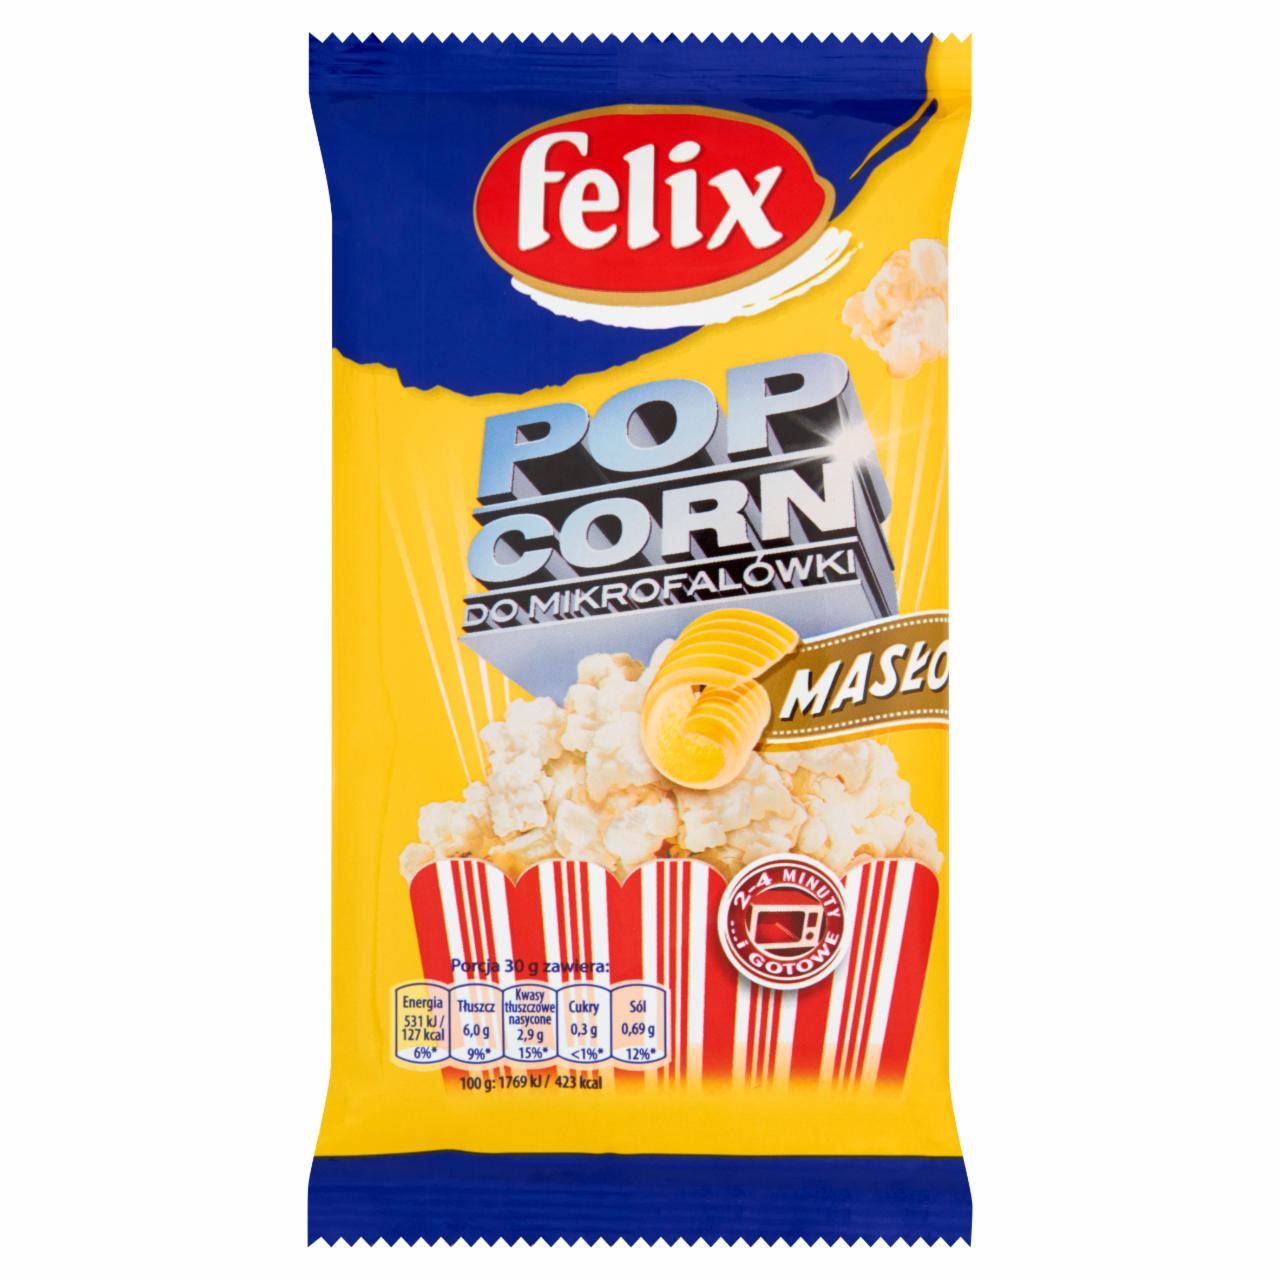 Zdjęcia - Felix Popcorn maślany do mikrofalówki 90 g